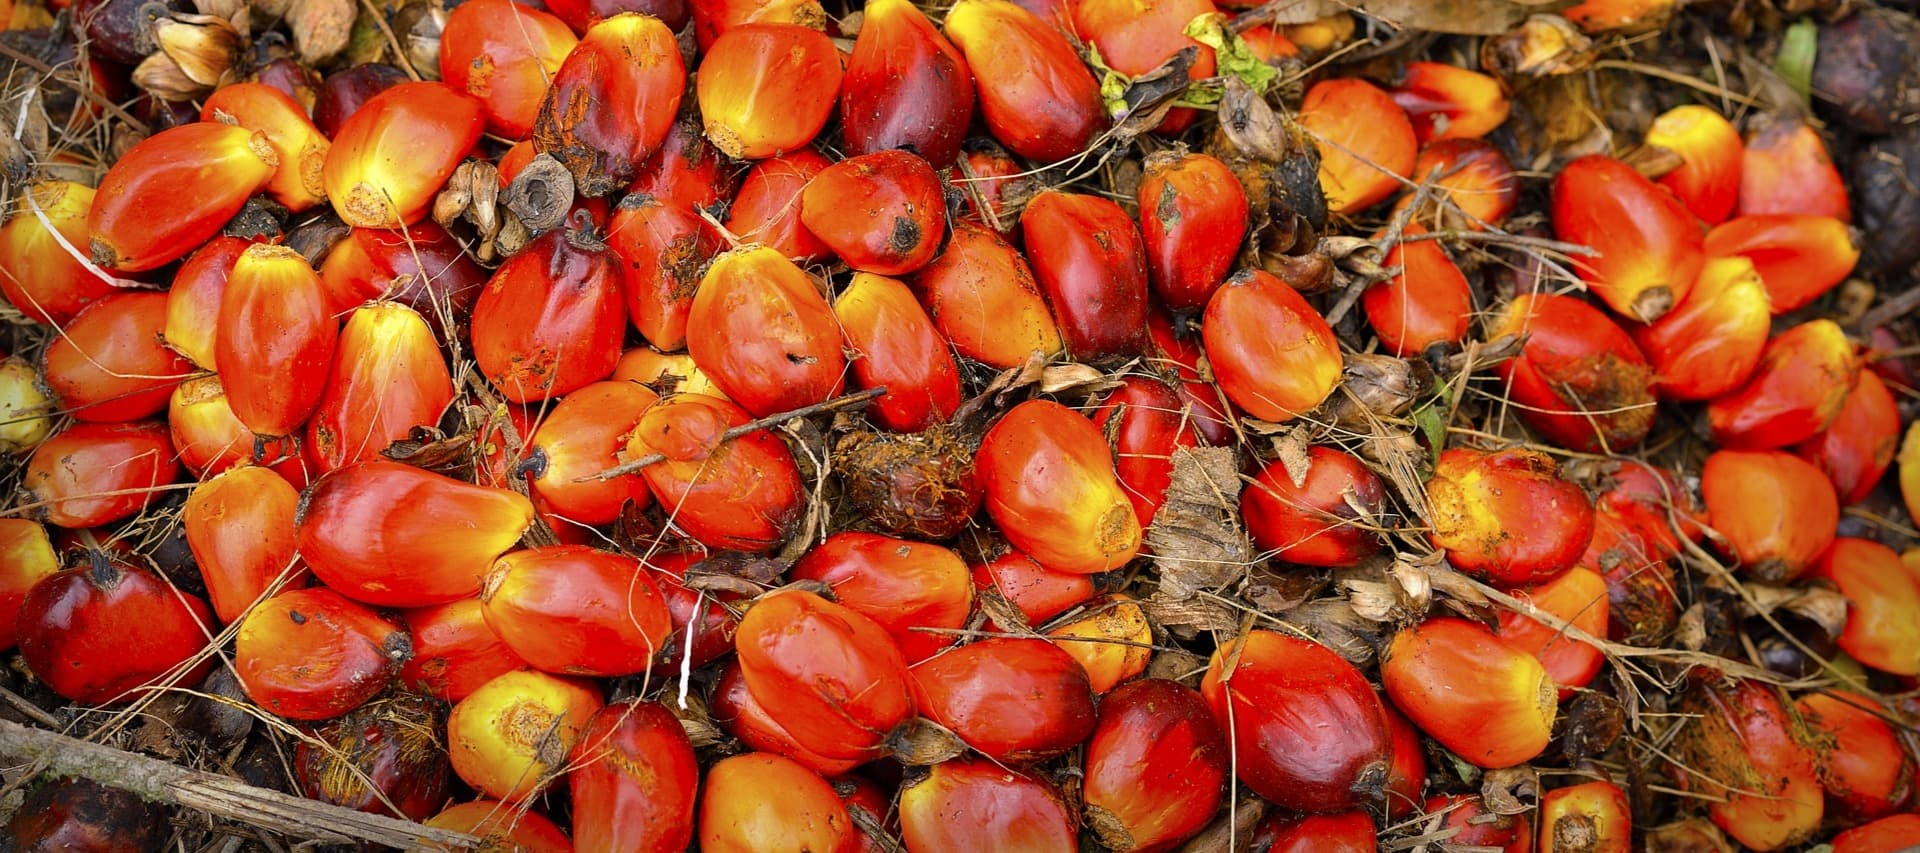 Фото новости: "Крупнейший в мире производитель пальмового масла запретил его экспорт"